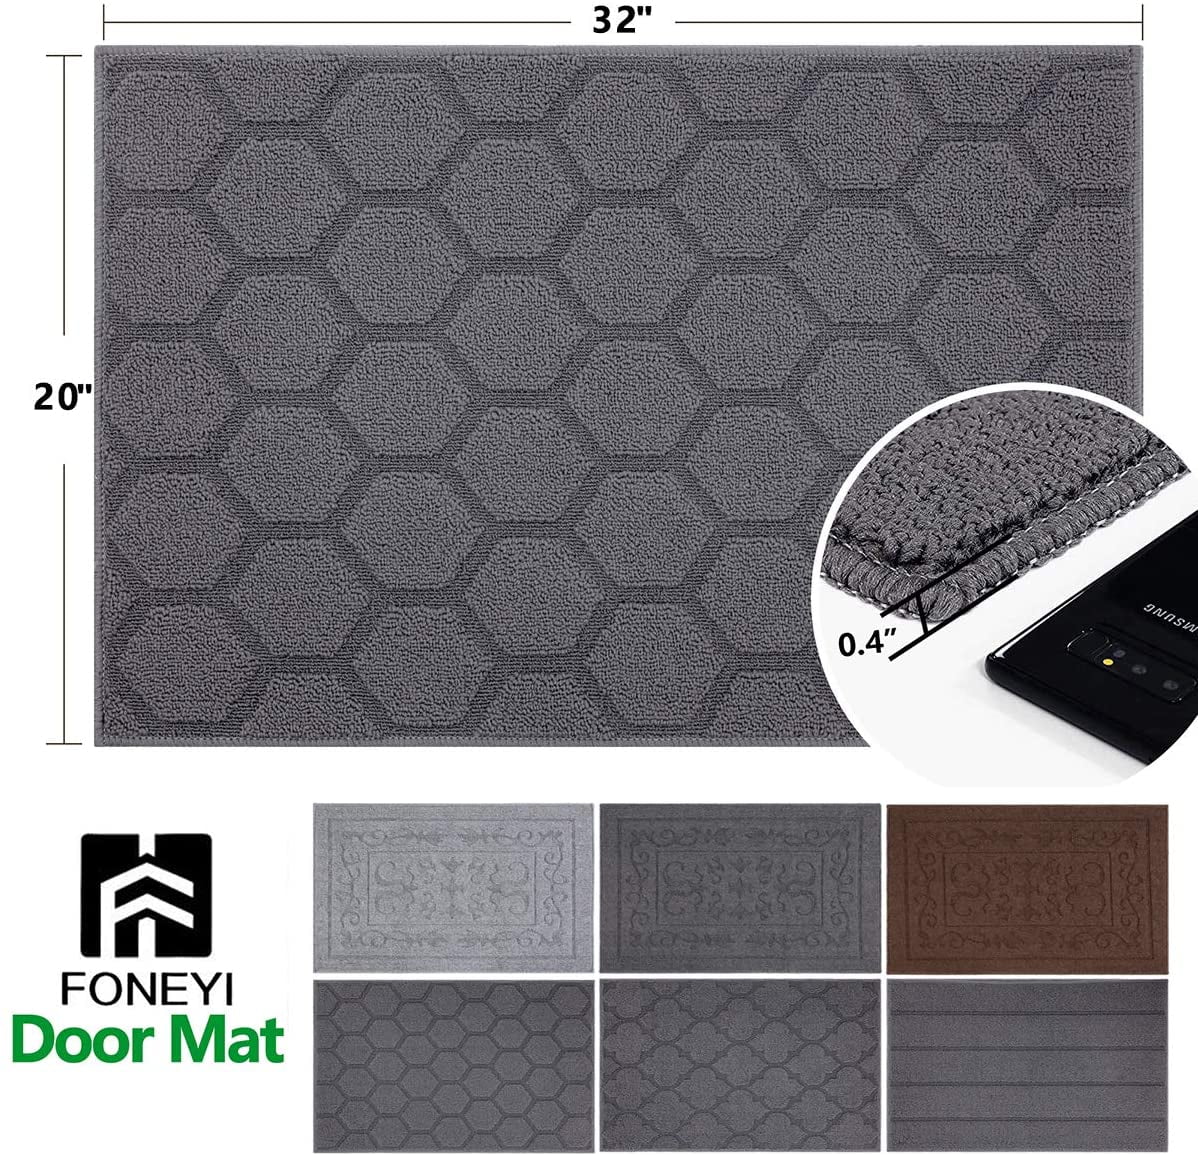 Geometric Indoor Doormat, Durable & Resist Dirt Rugs for Entryway Front  Door Mat, Non Slip Washable Low Profile Inside Floor Mats Entry Rug  20x31.5inch Yellow Black Grid Line Art Texture